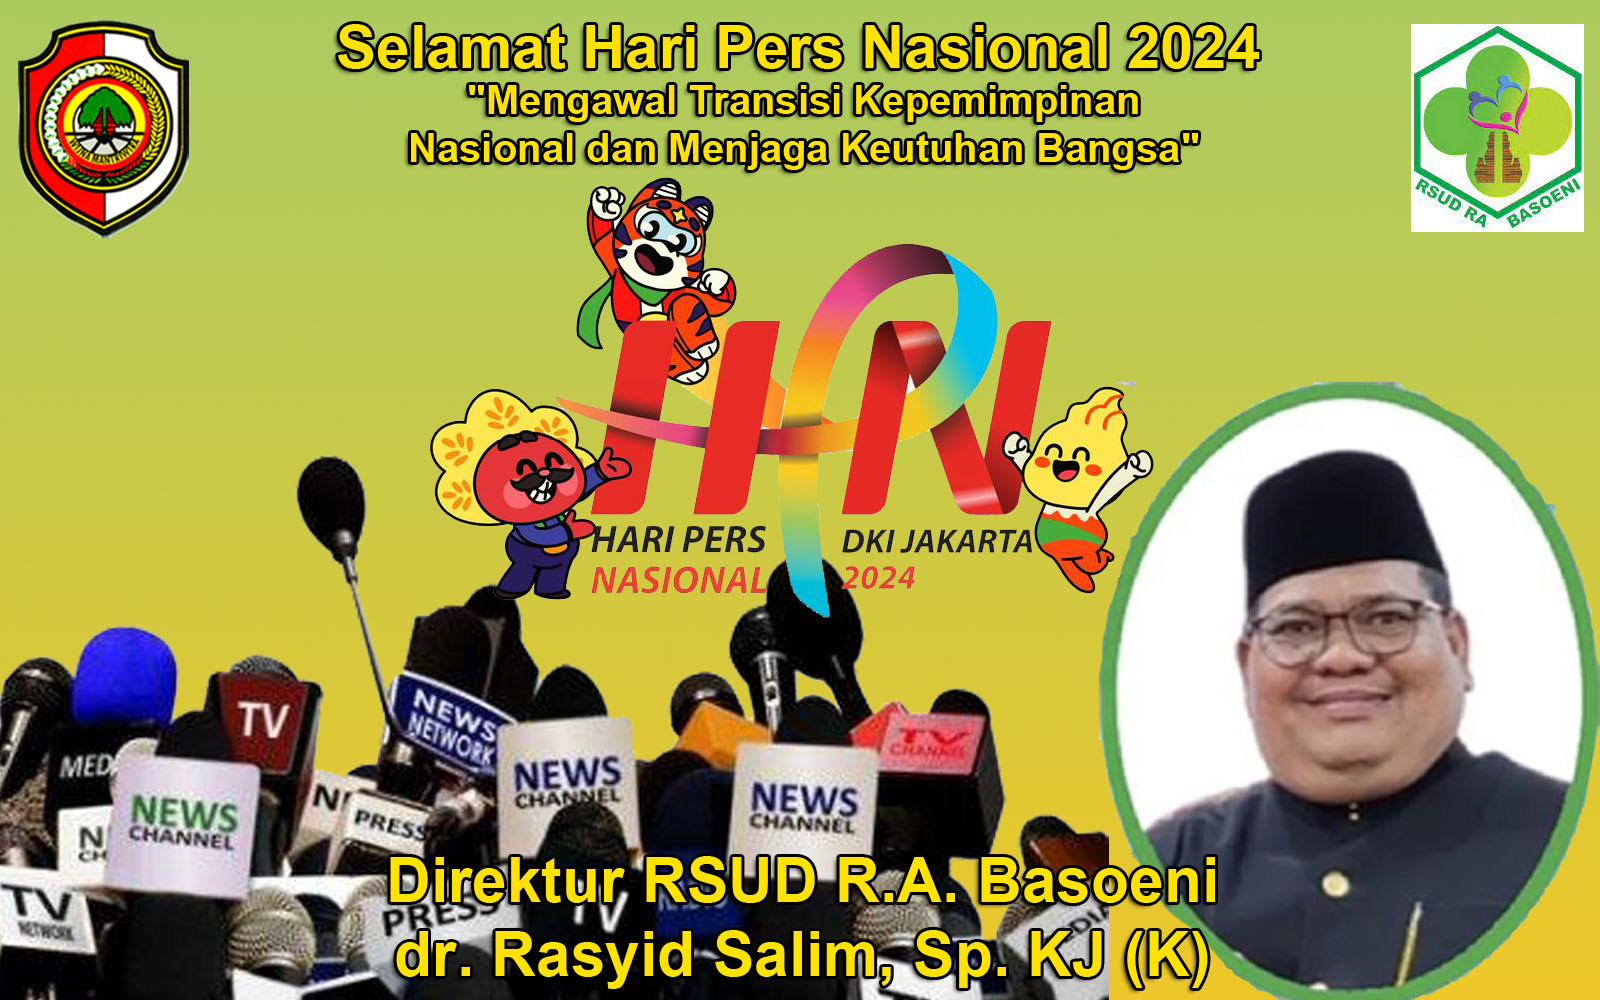 Direktur RSUD R.A. Basoeni dr. Rasyid Salim, Sp. KJ (K) Mengucapkan Selamat Hari Pers Nasional 2024